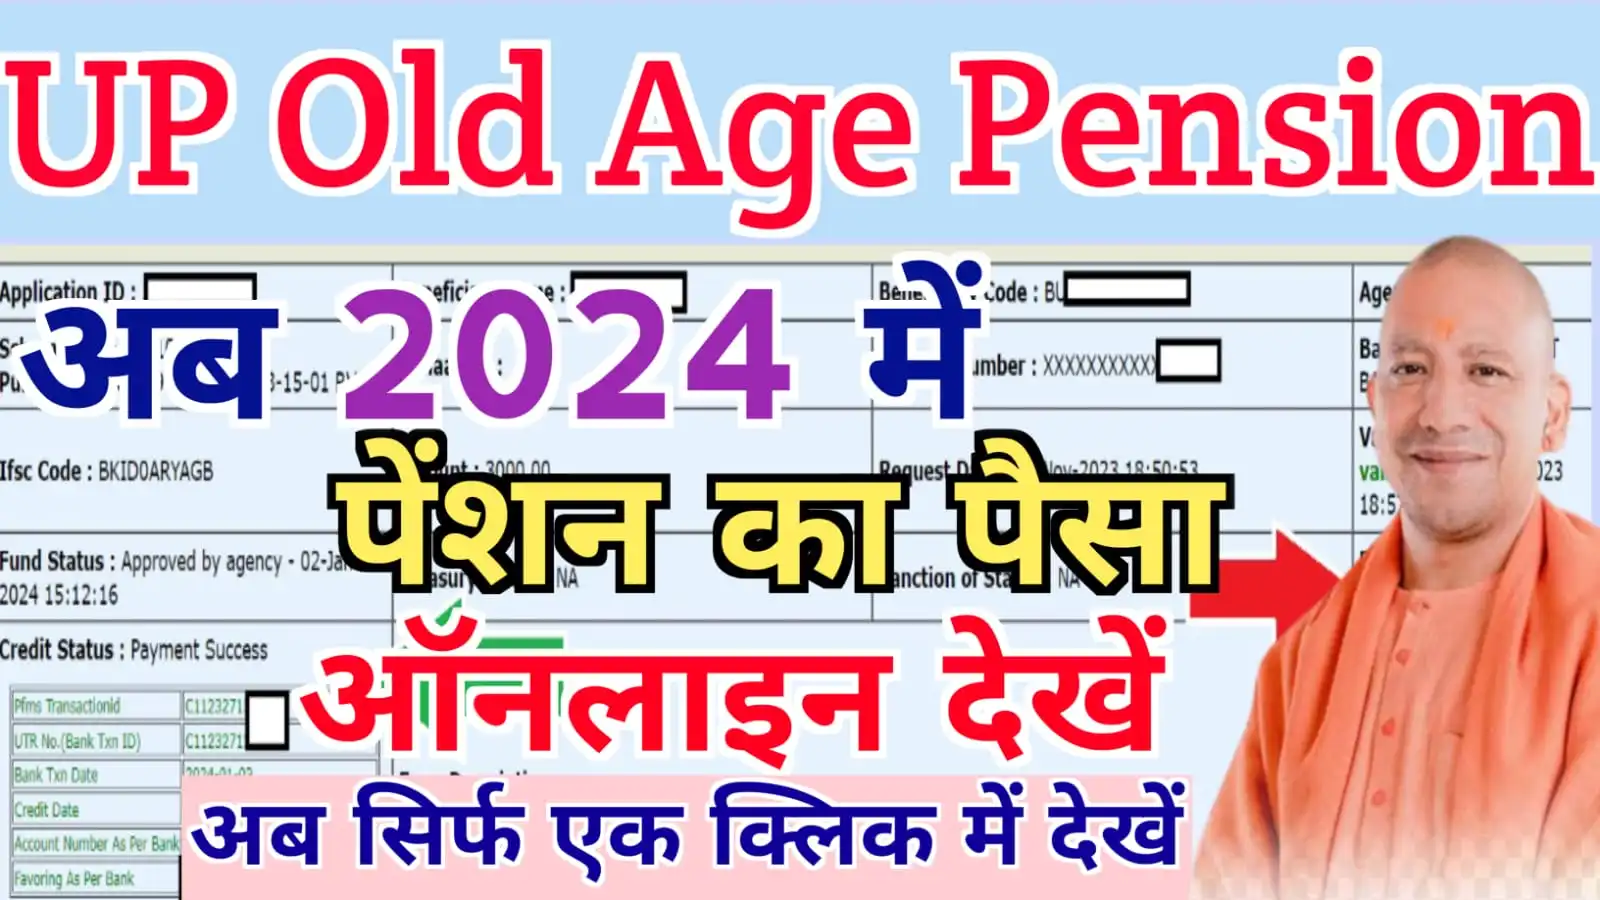 UP Old Age Pension Payment Check 2024 ऑनलाइन वृद्धा पेंशन की किस्त का